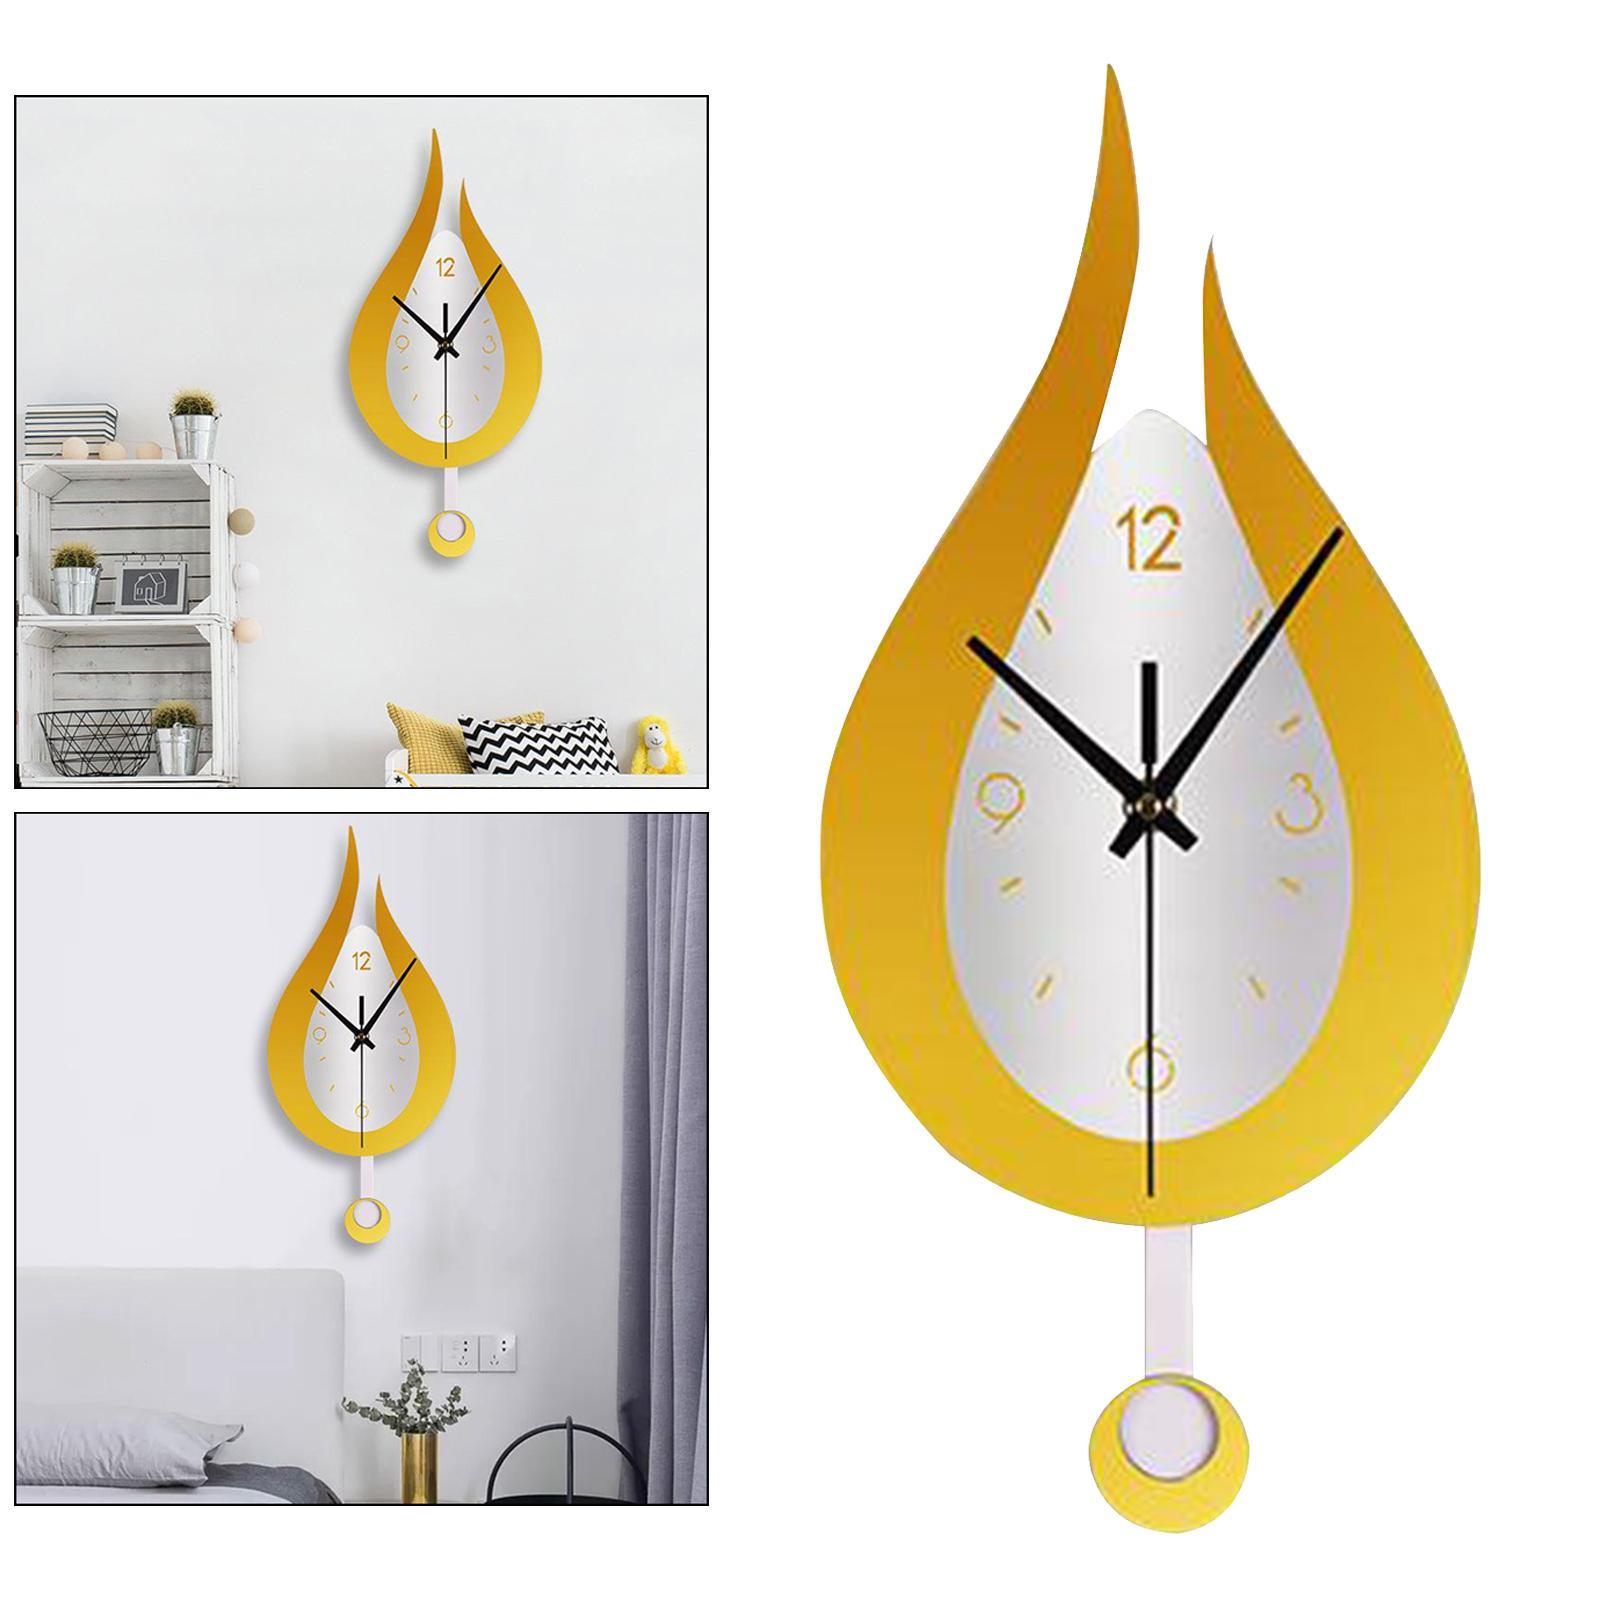 2 PCS Modern Pendulum Kitchen Wall Clocks Battery Operated Decorative Clocks